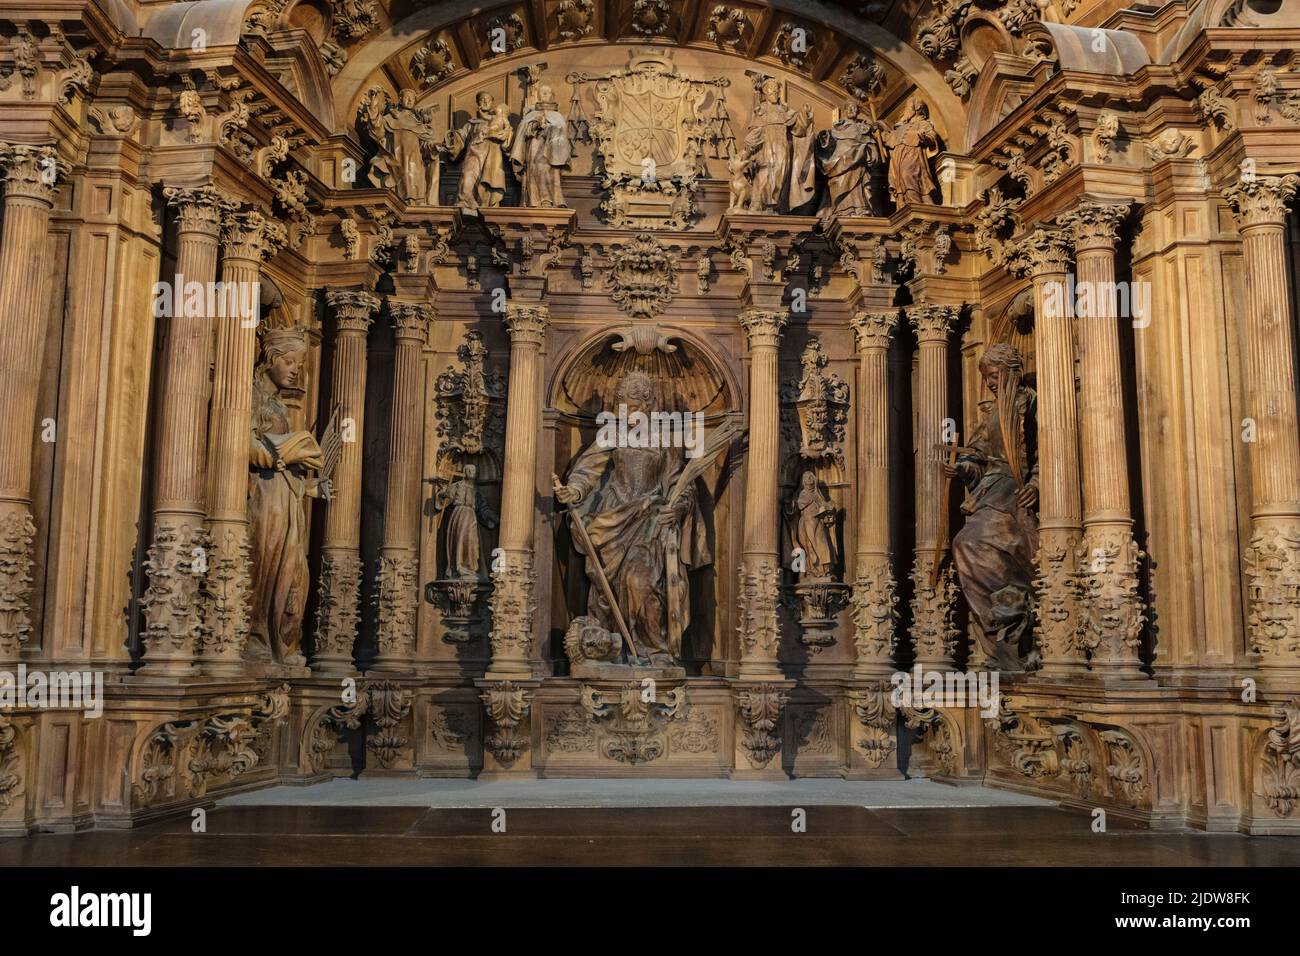 Spanien, Burgos. Kathedrale von Santa Maria, ein Weltkulturerbe. Altarbild, Kapelle der Heiligen Catalina. Stockfoto